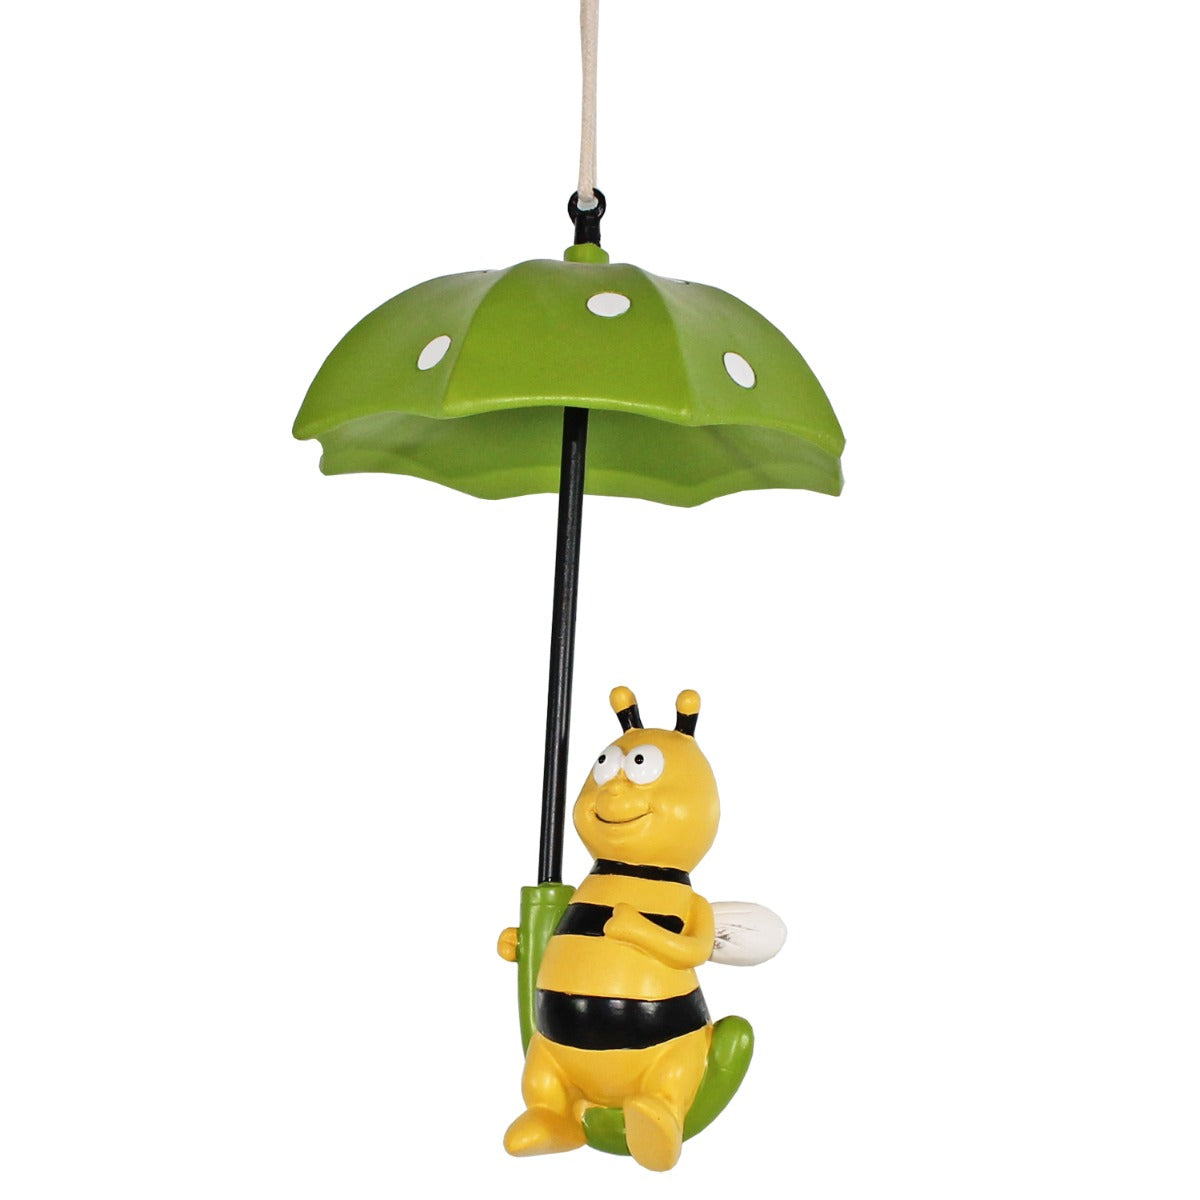 colourliving Deko Figur Biene unterm Regenschirm Deko Bienen Figuren Bienen Deko lustige Gartendeko